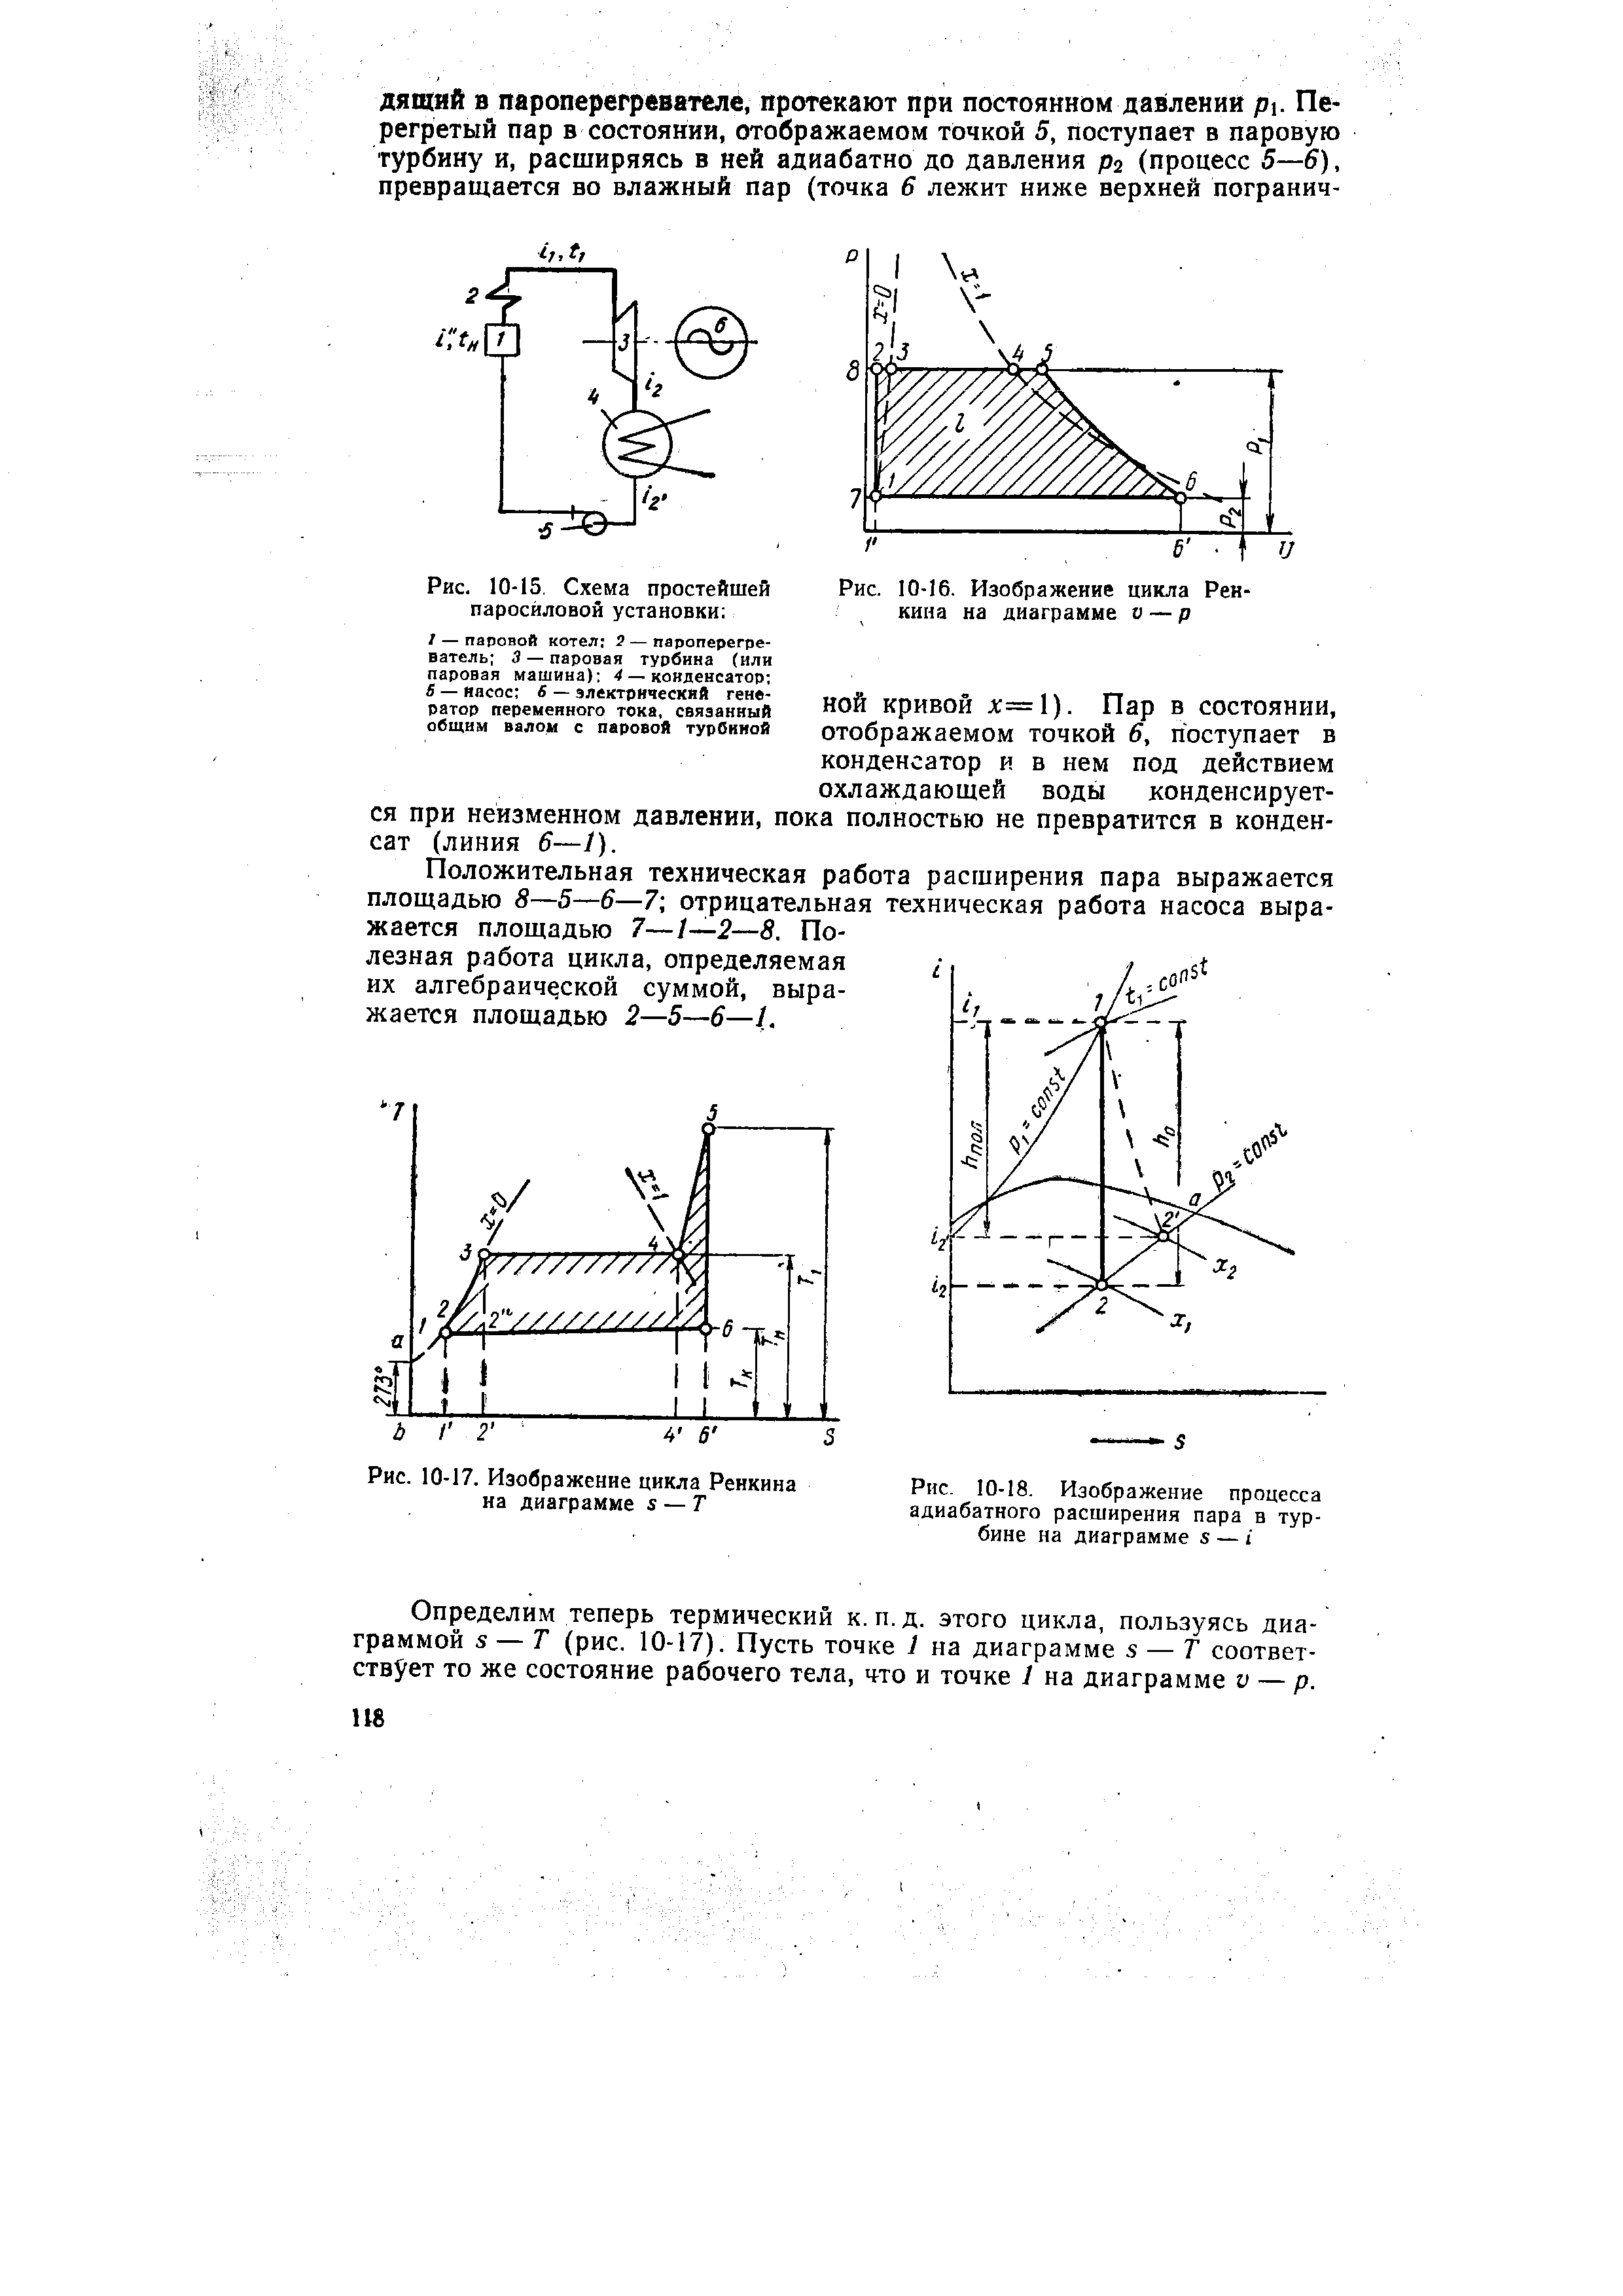 Рис. 10-15, Схема простейшей паросиловой установки 
